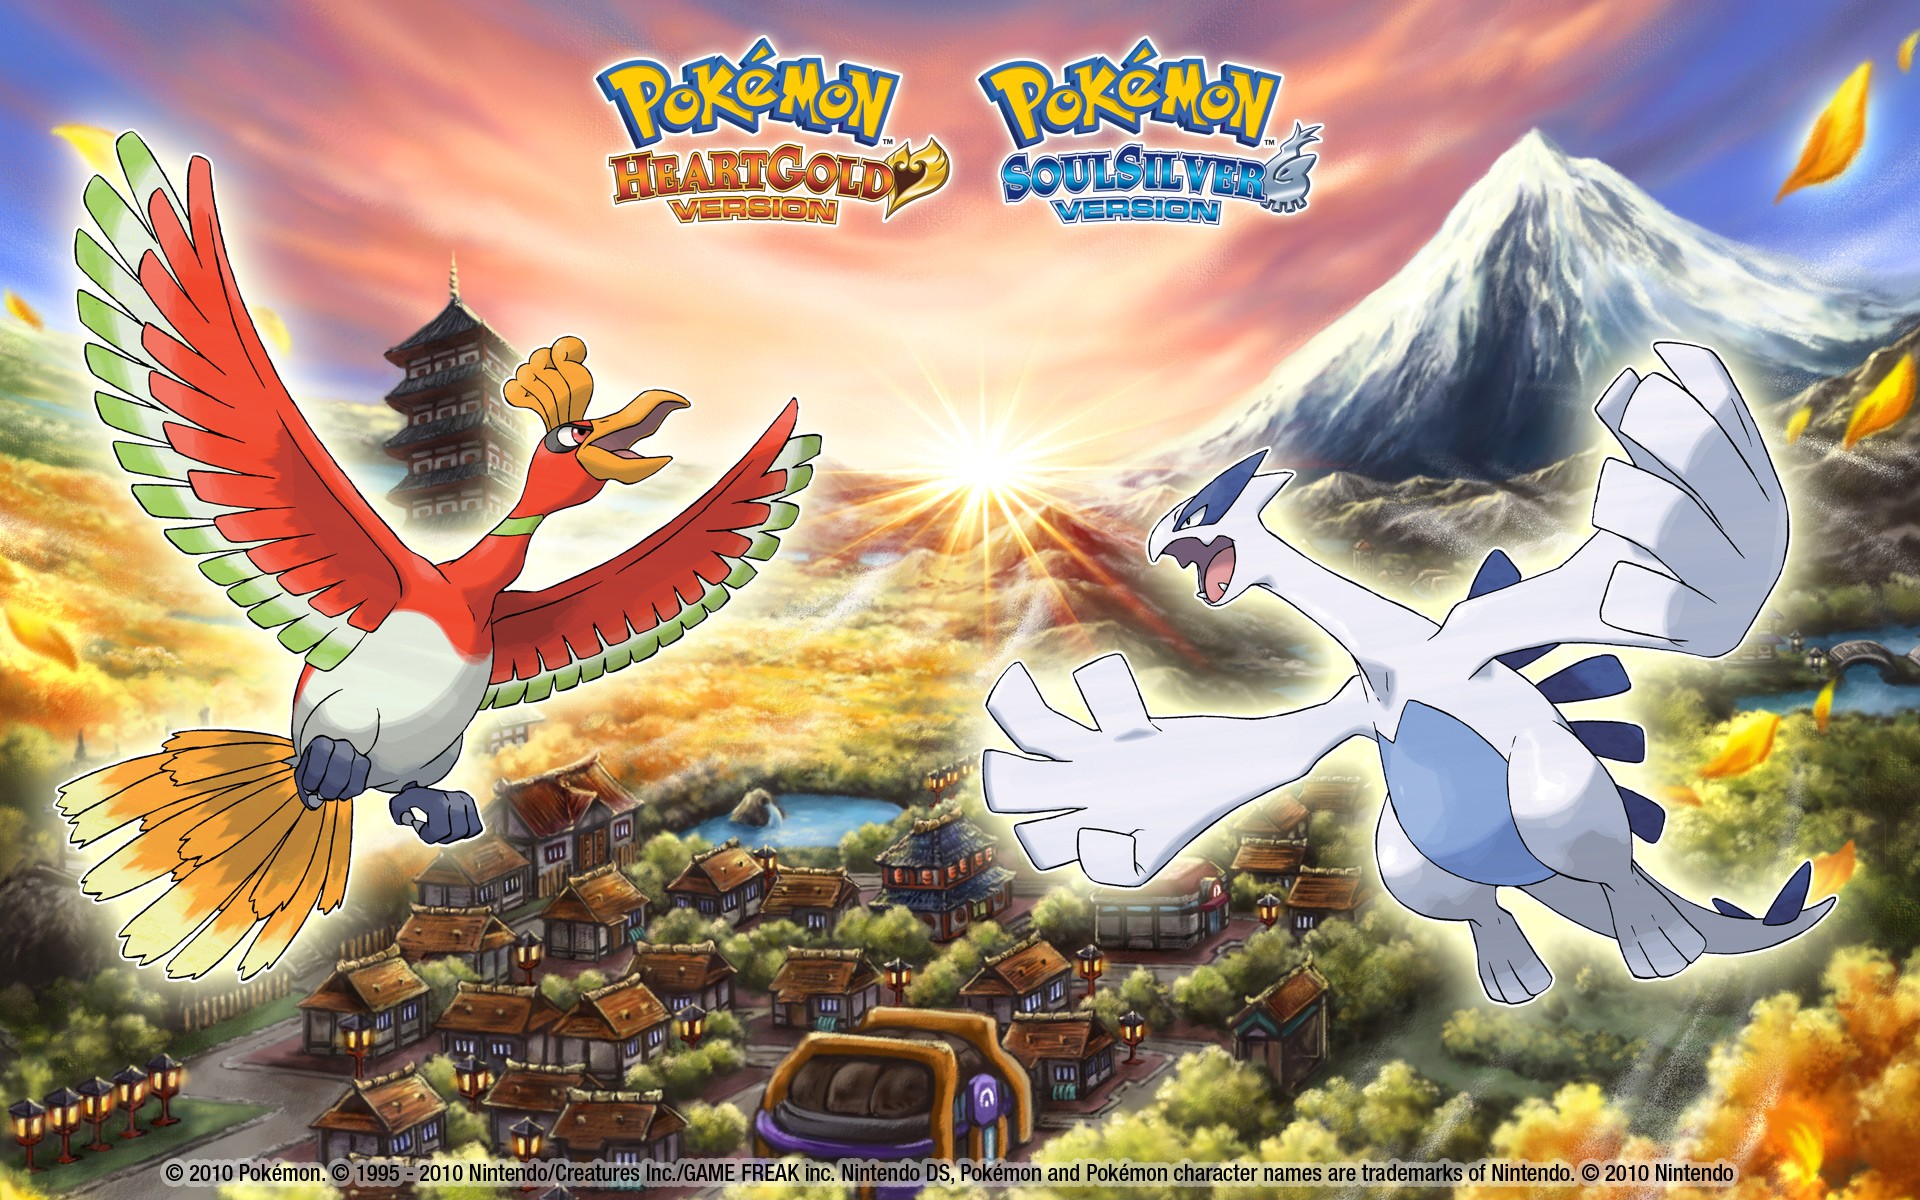 Mobile wallpaper: Anime, Pokémon, Lugia (Pokémon), 1153561 download the  picture for free.